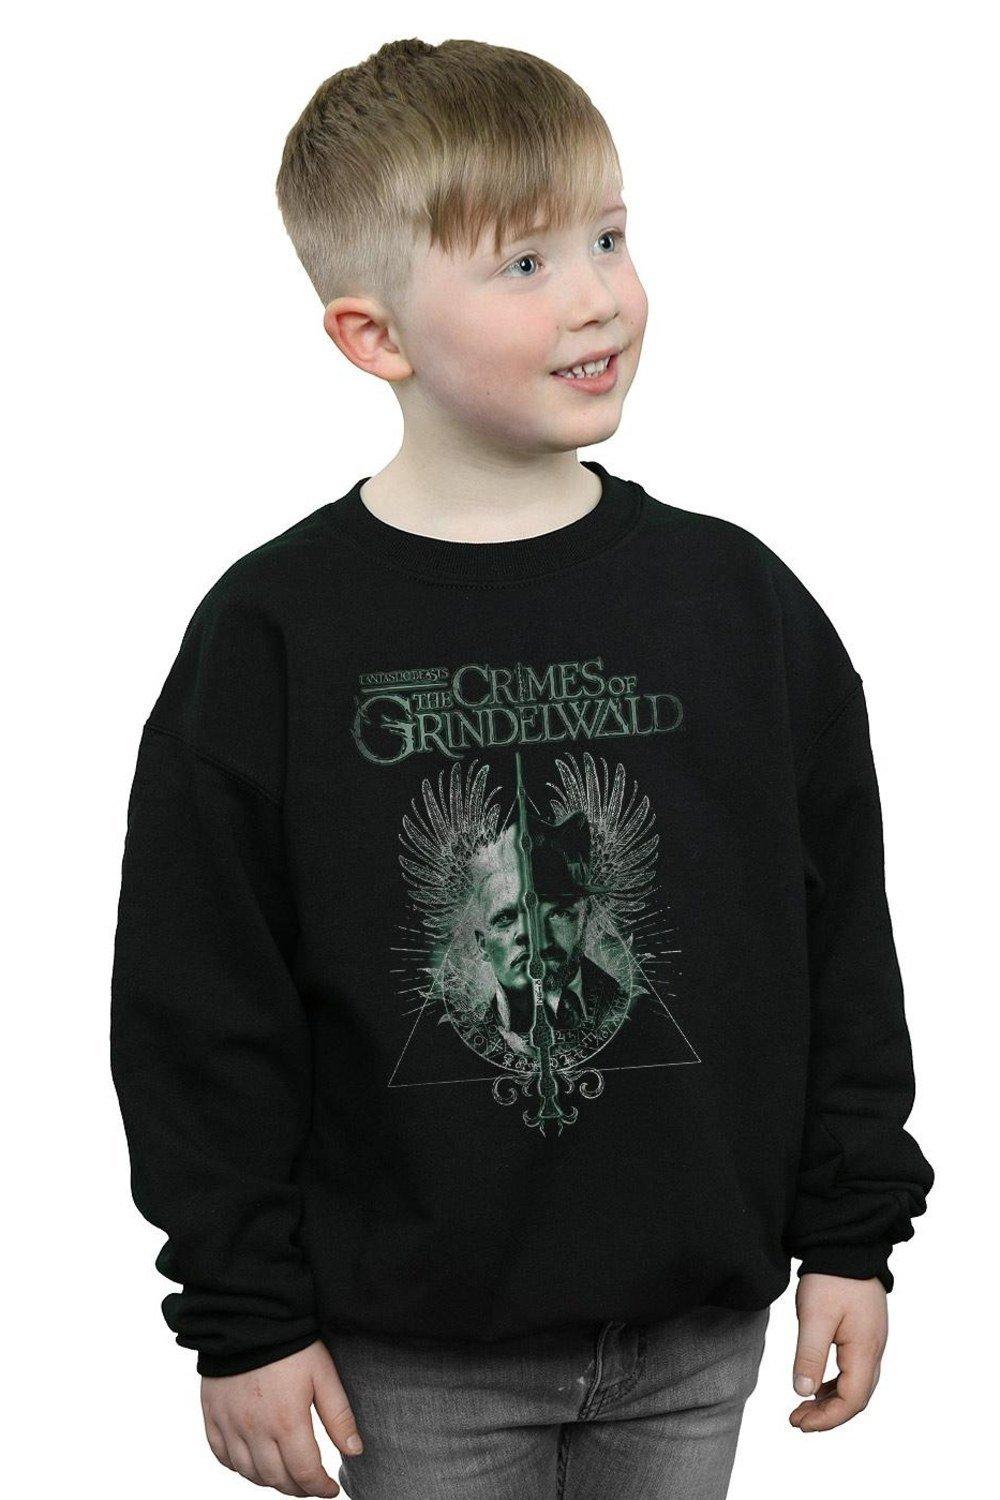 The Crimes Of Grindelwald Wand Split Sweatshirt